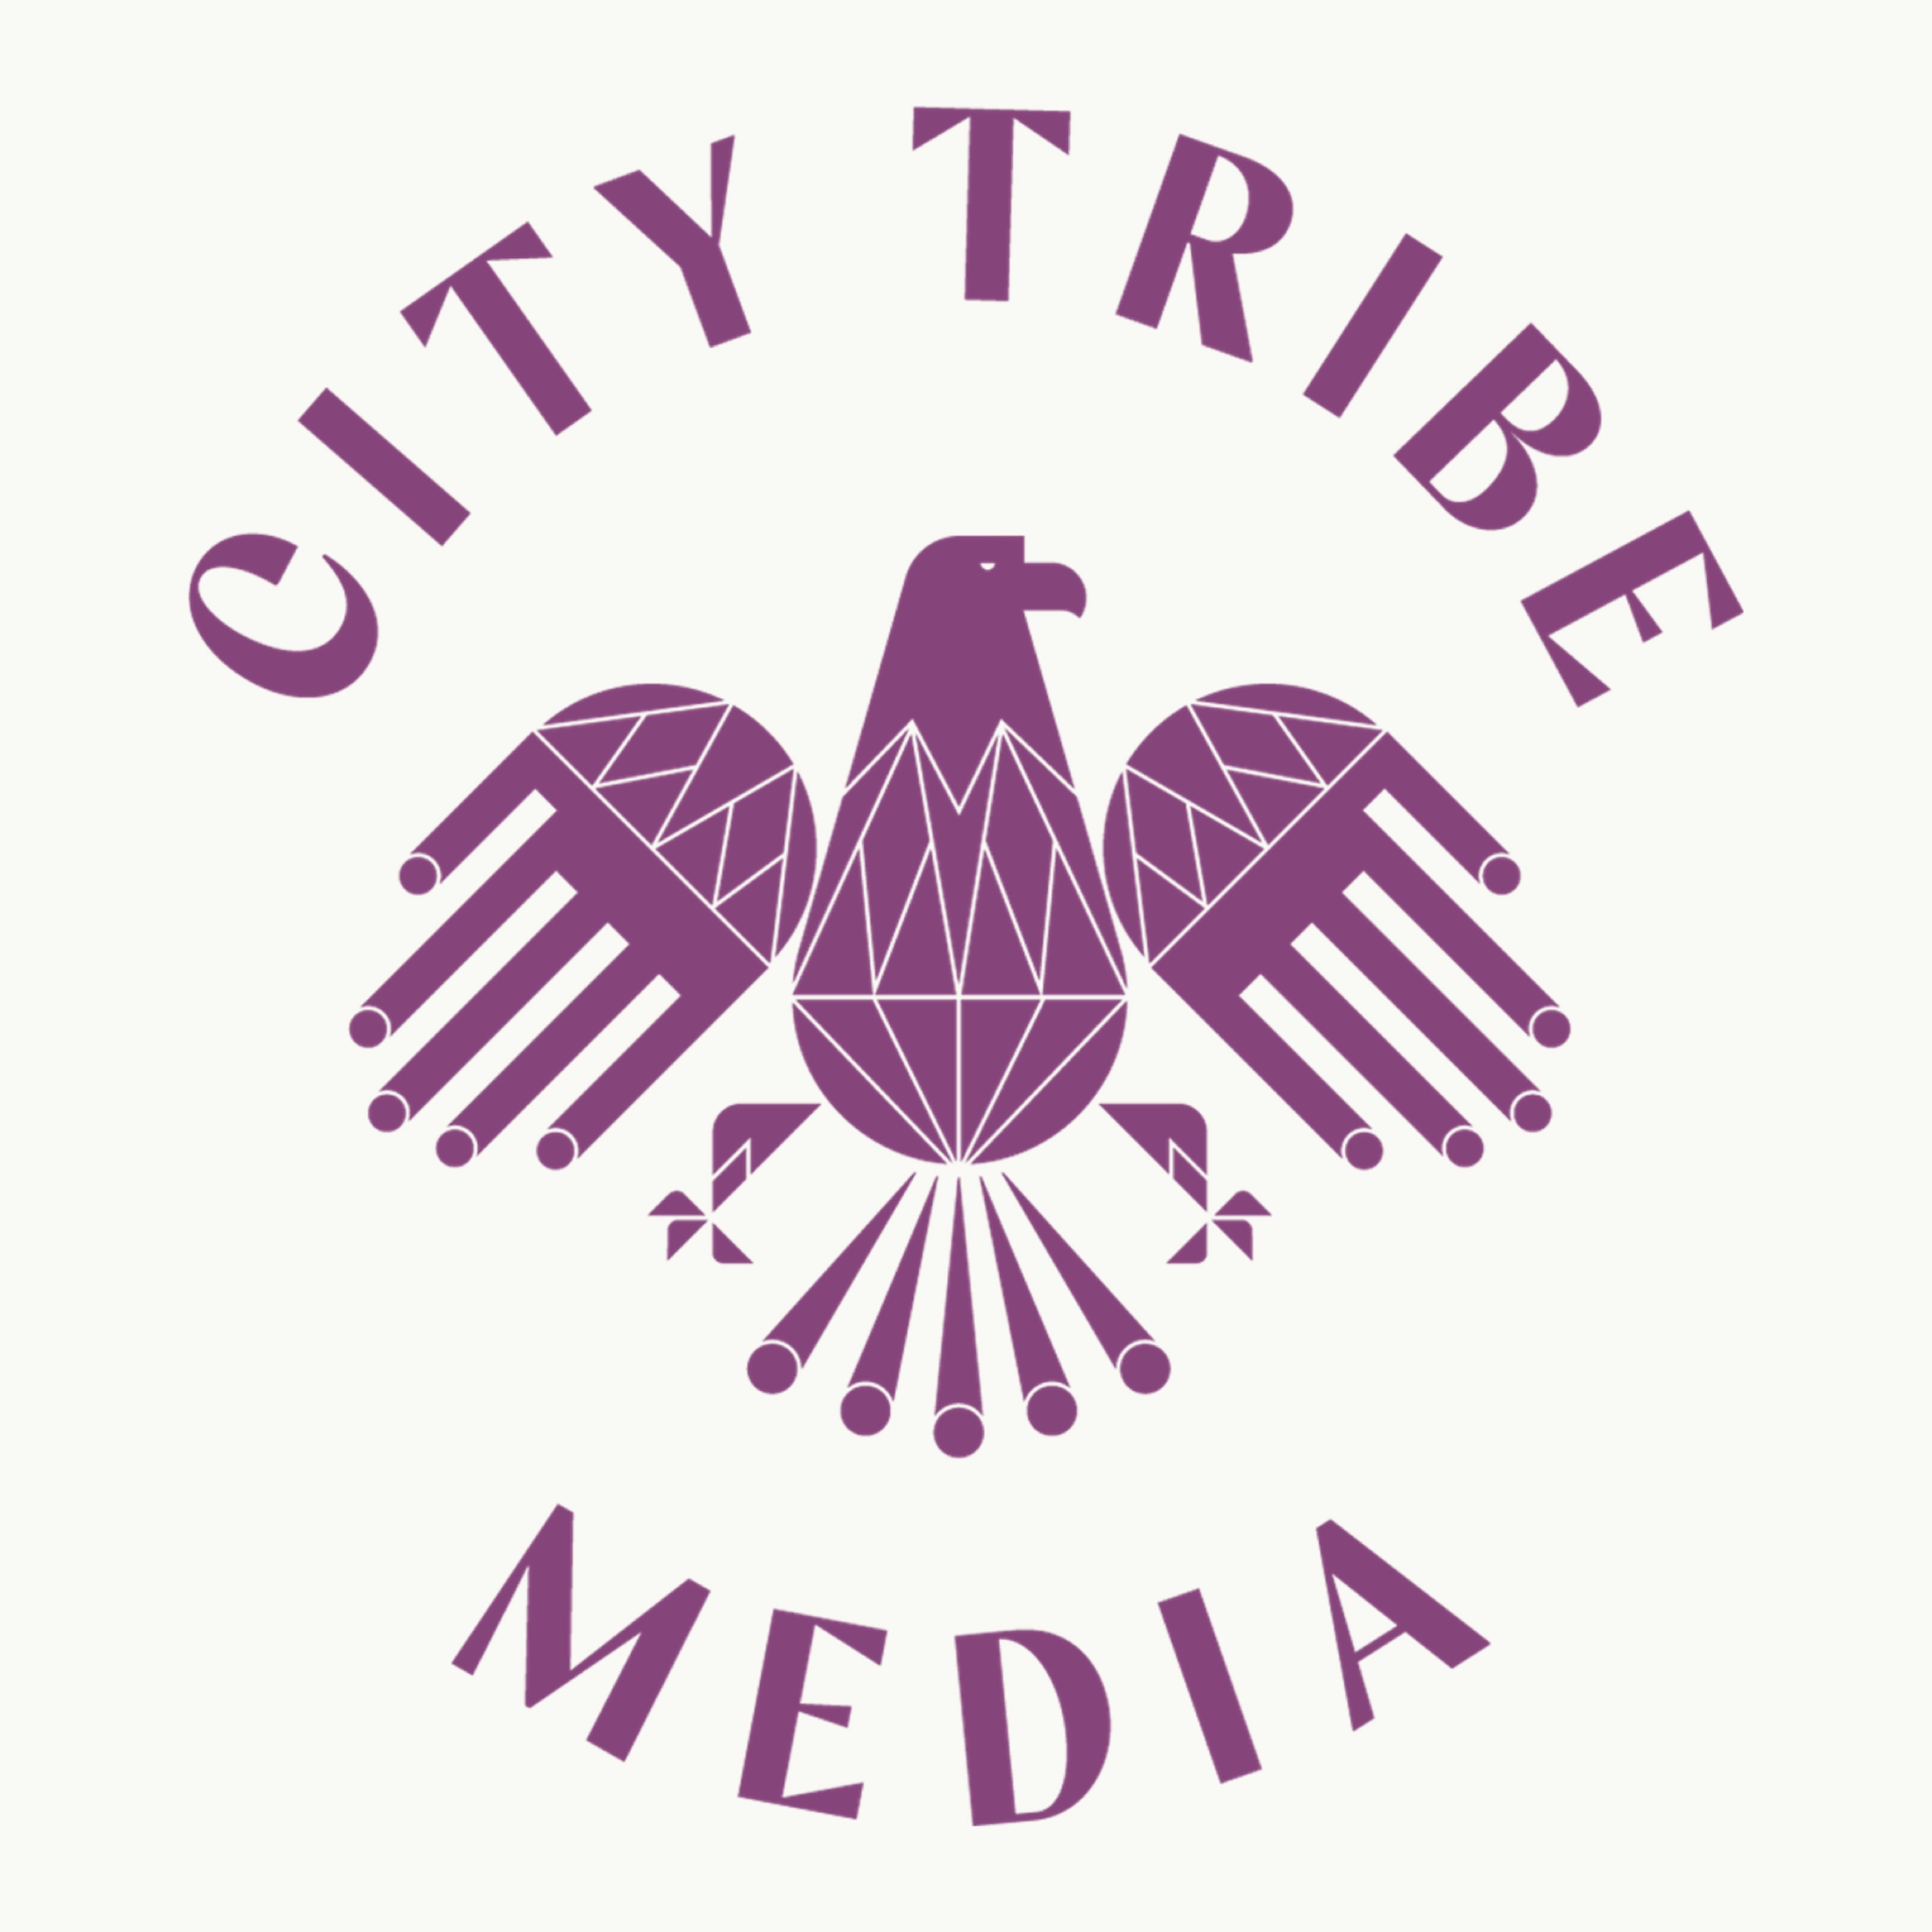 City Tribe Media